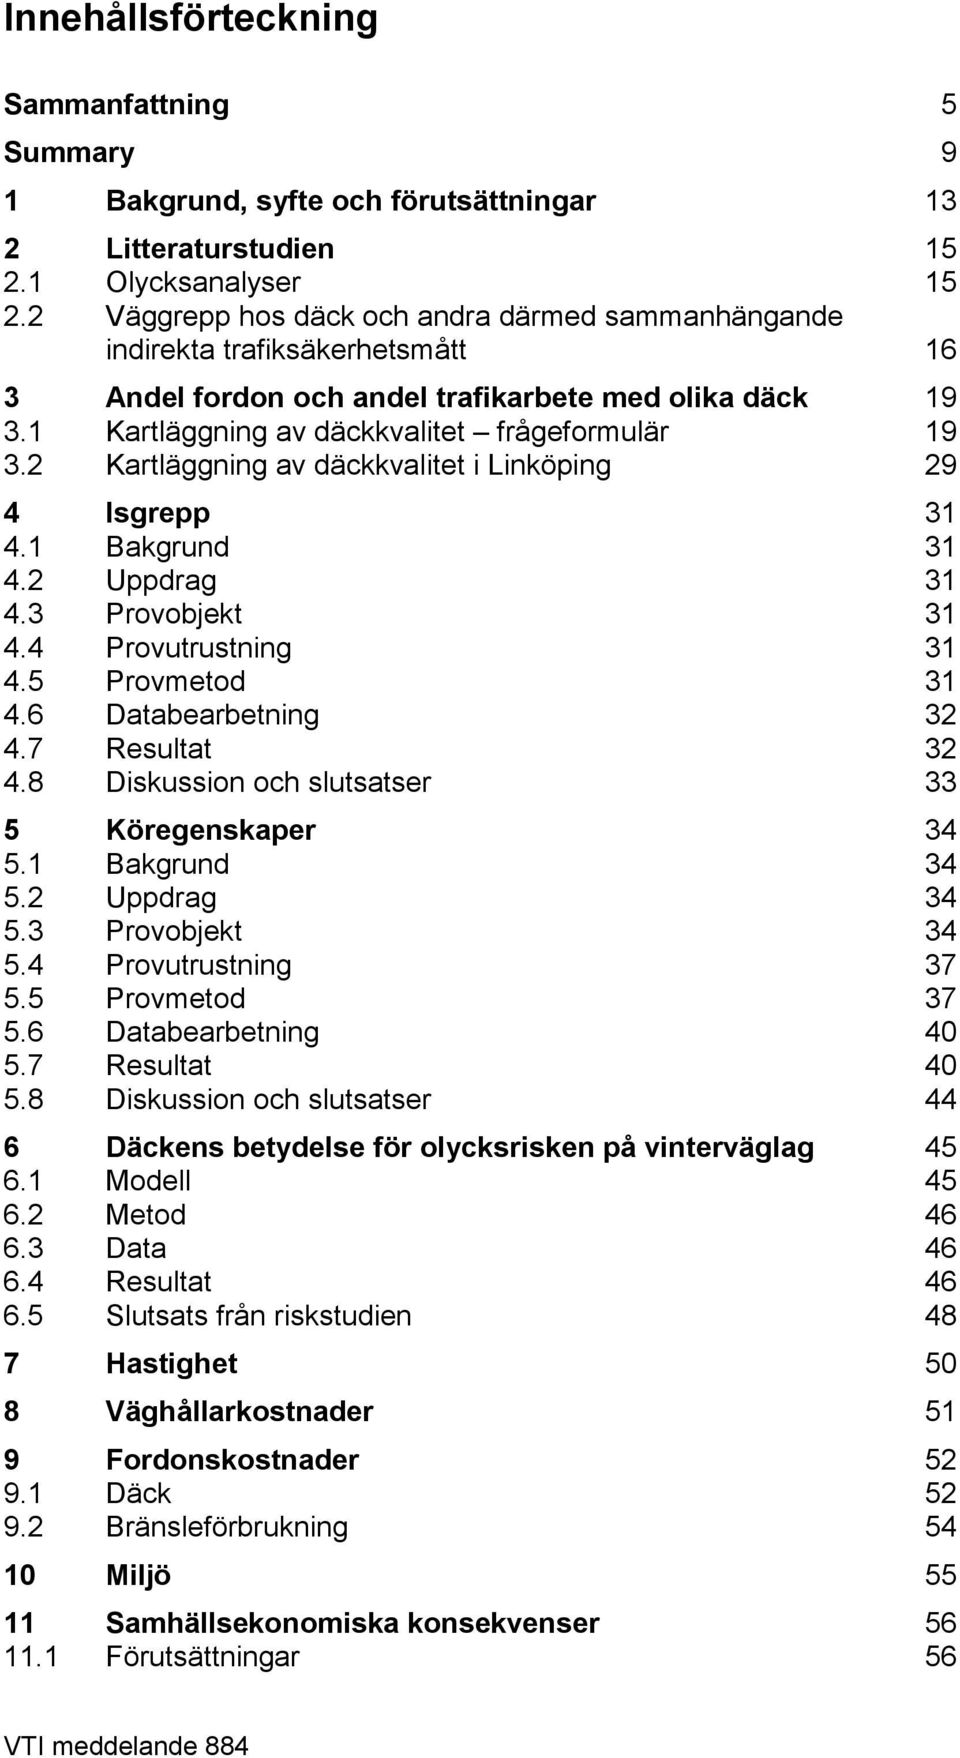 2 Kartläggning av däckkvalitet i Linköping 29 4 Isgrepp 31 4.1 Bakgrund 31 4.2 Uppdrag 31 4.3 Provobjekt 31 4.4 Provutrustning 31 4.5 Provmetod 31 4.6 Databearbetning 32 4.7 Resultat 32 4.